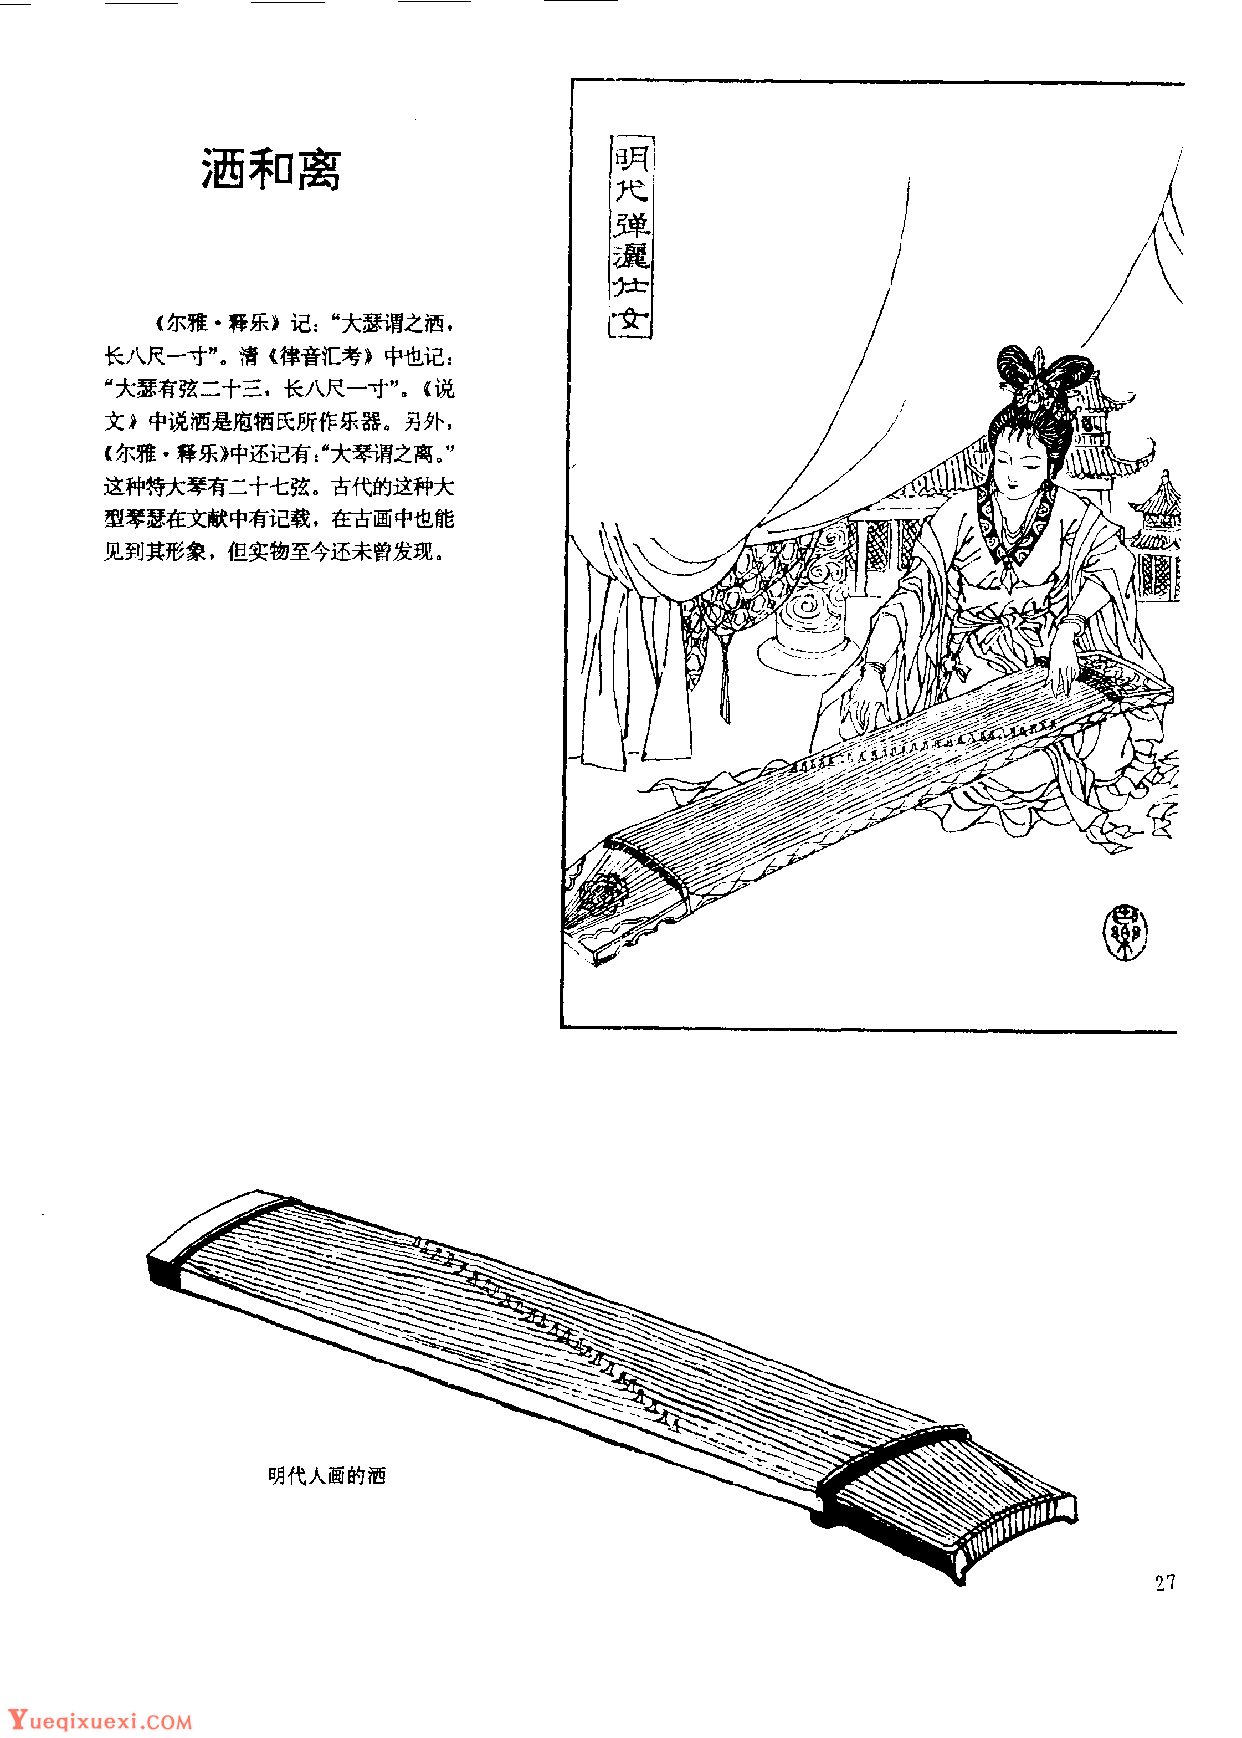 中国古代乐器《洒和离》